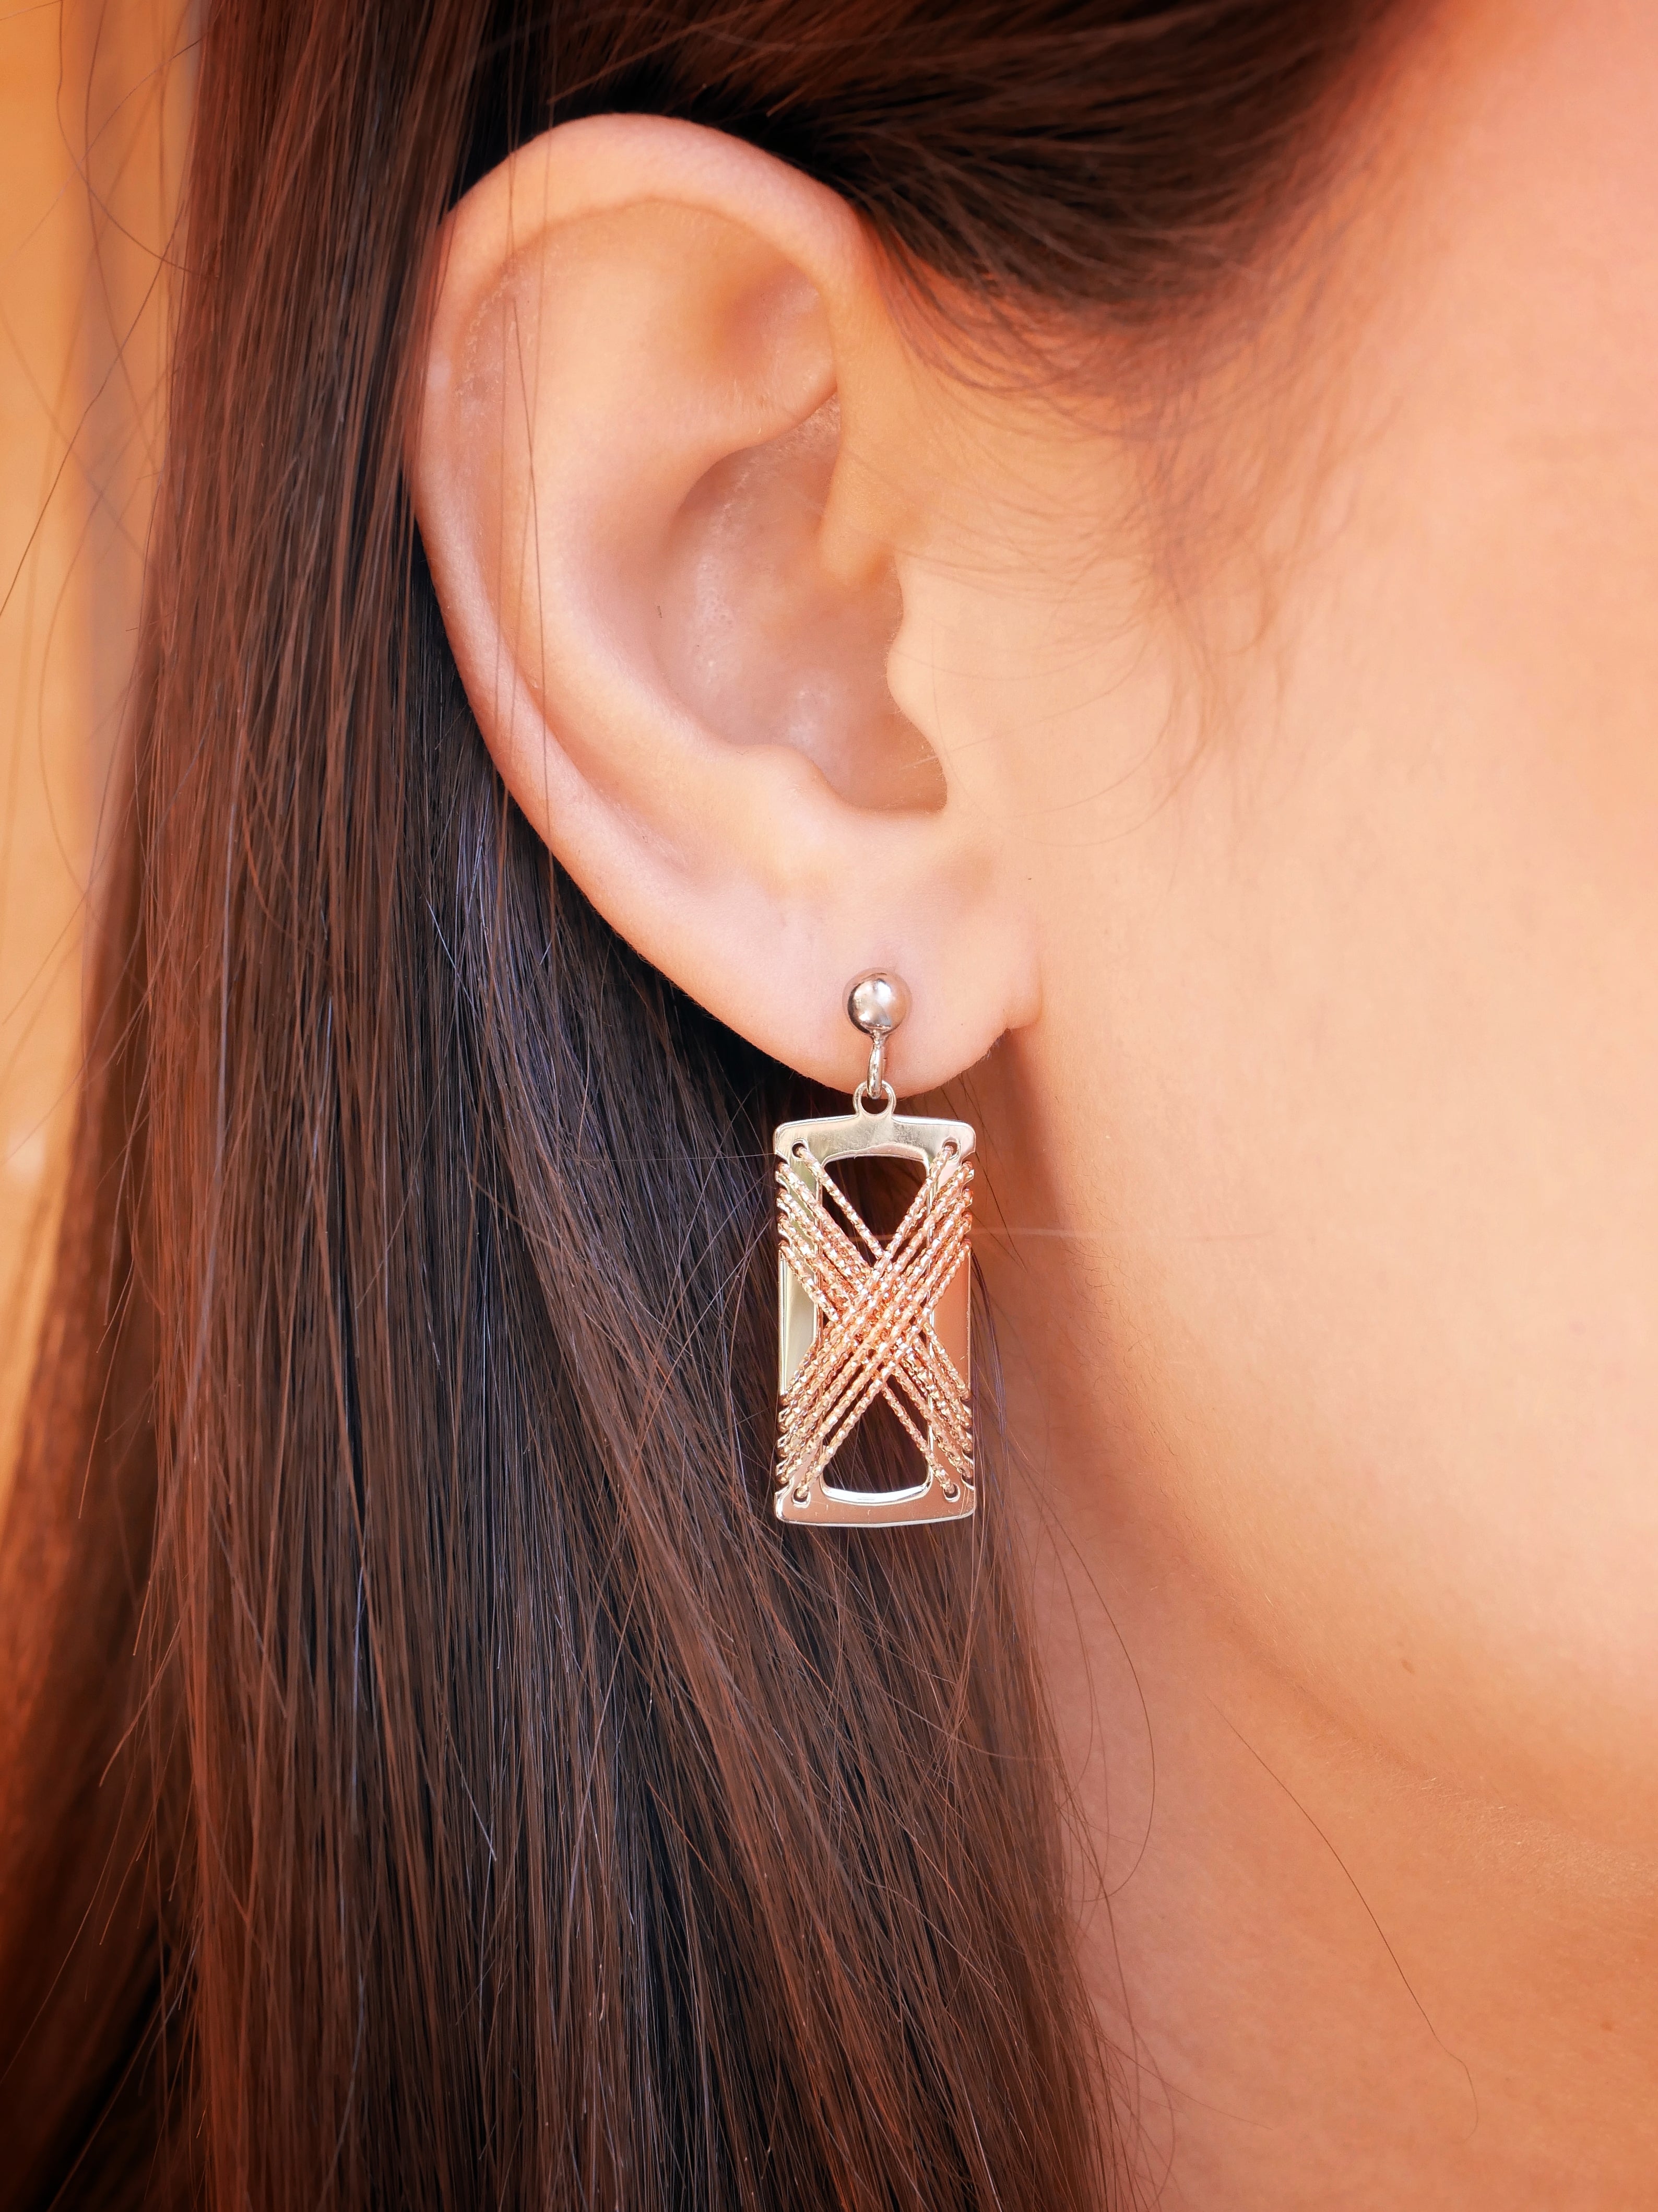 DIAMOND CUT 'Criss-Cross' Earrings